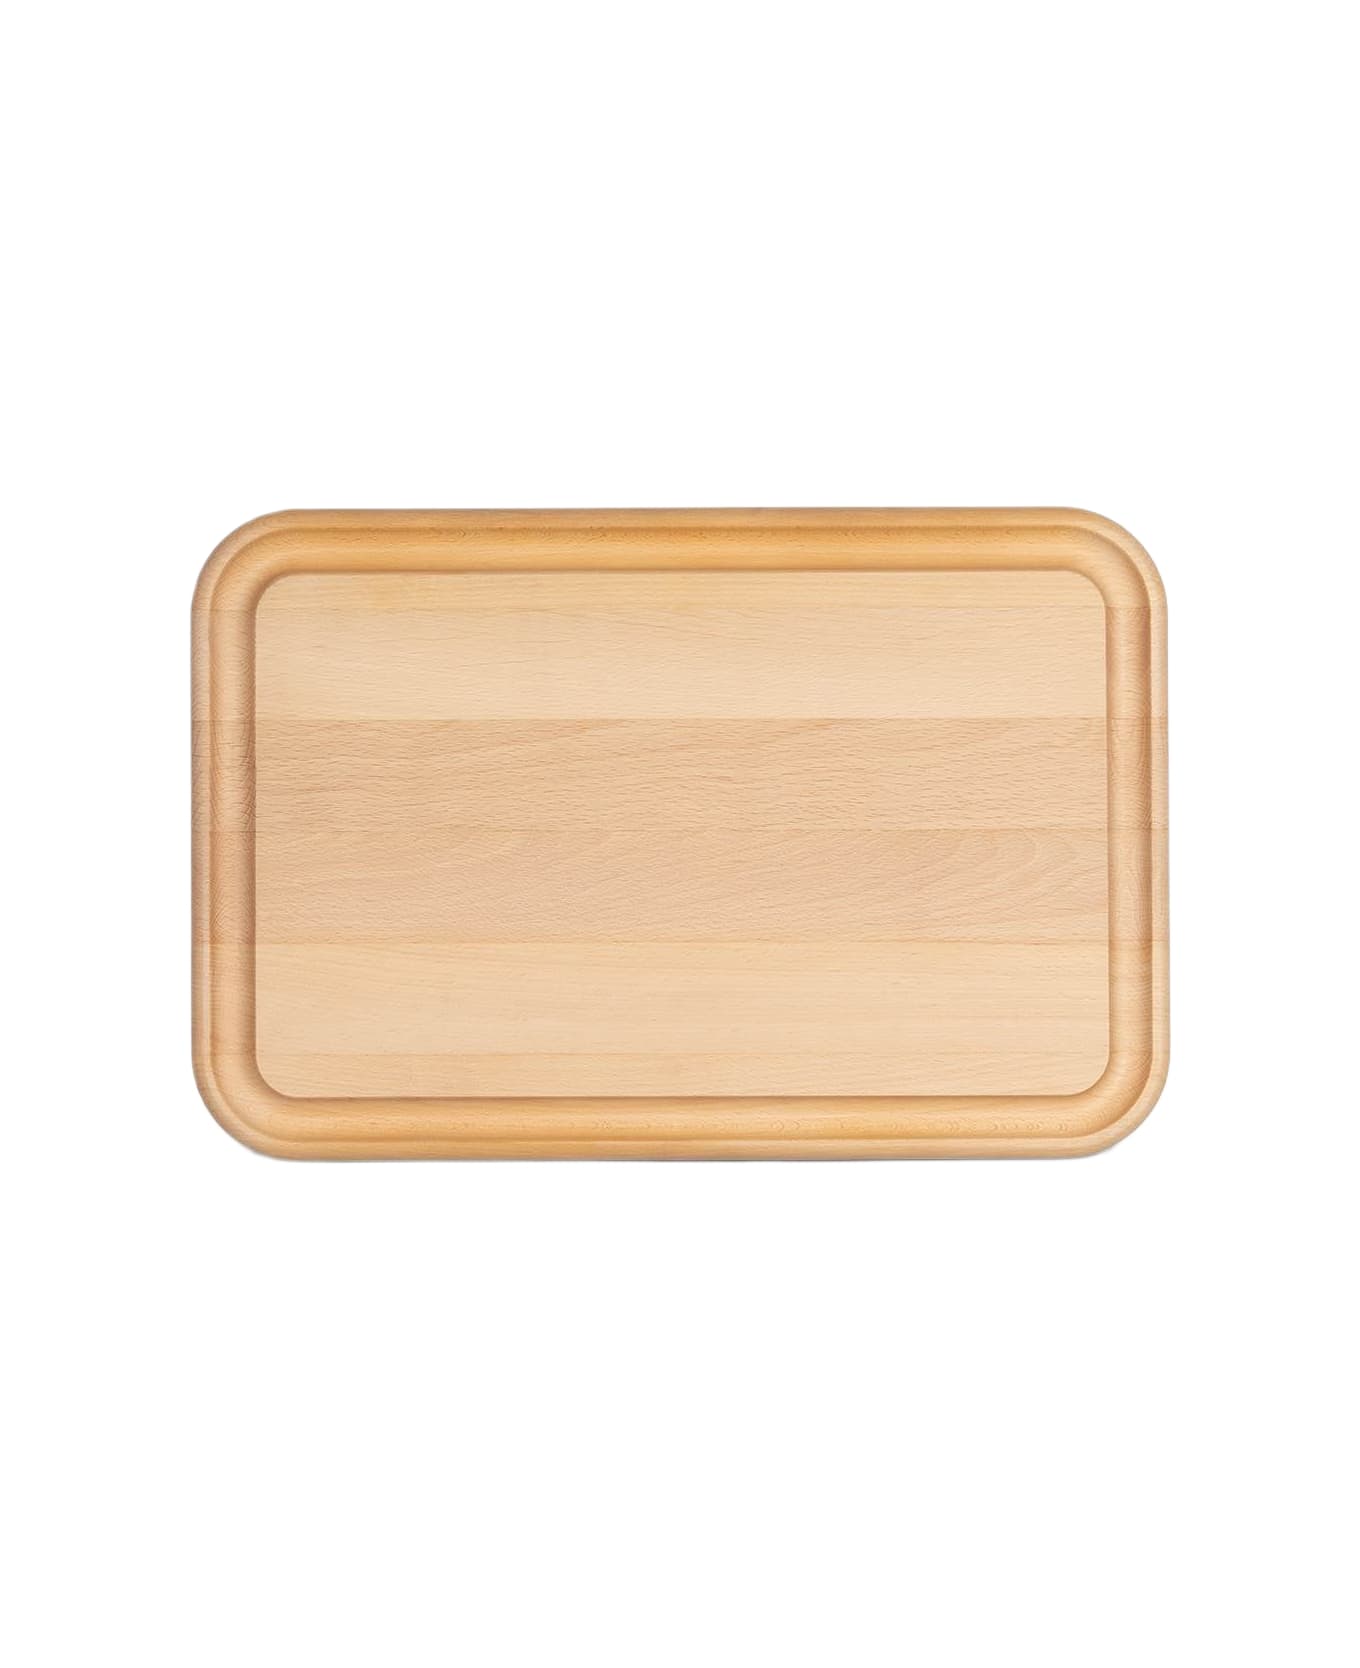 Larusmiani Roast Cutting Board  - Neutral カトラリー